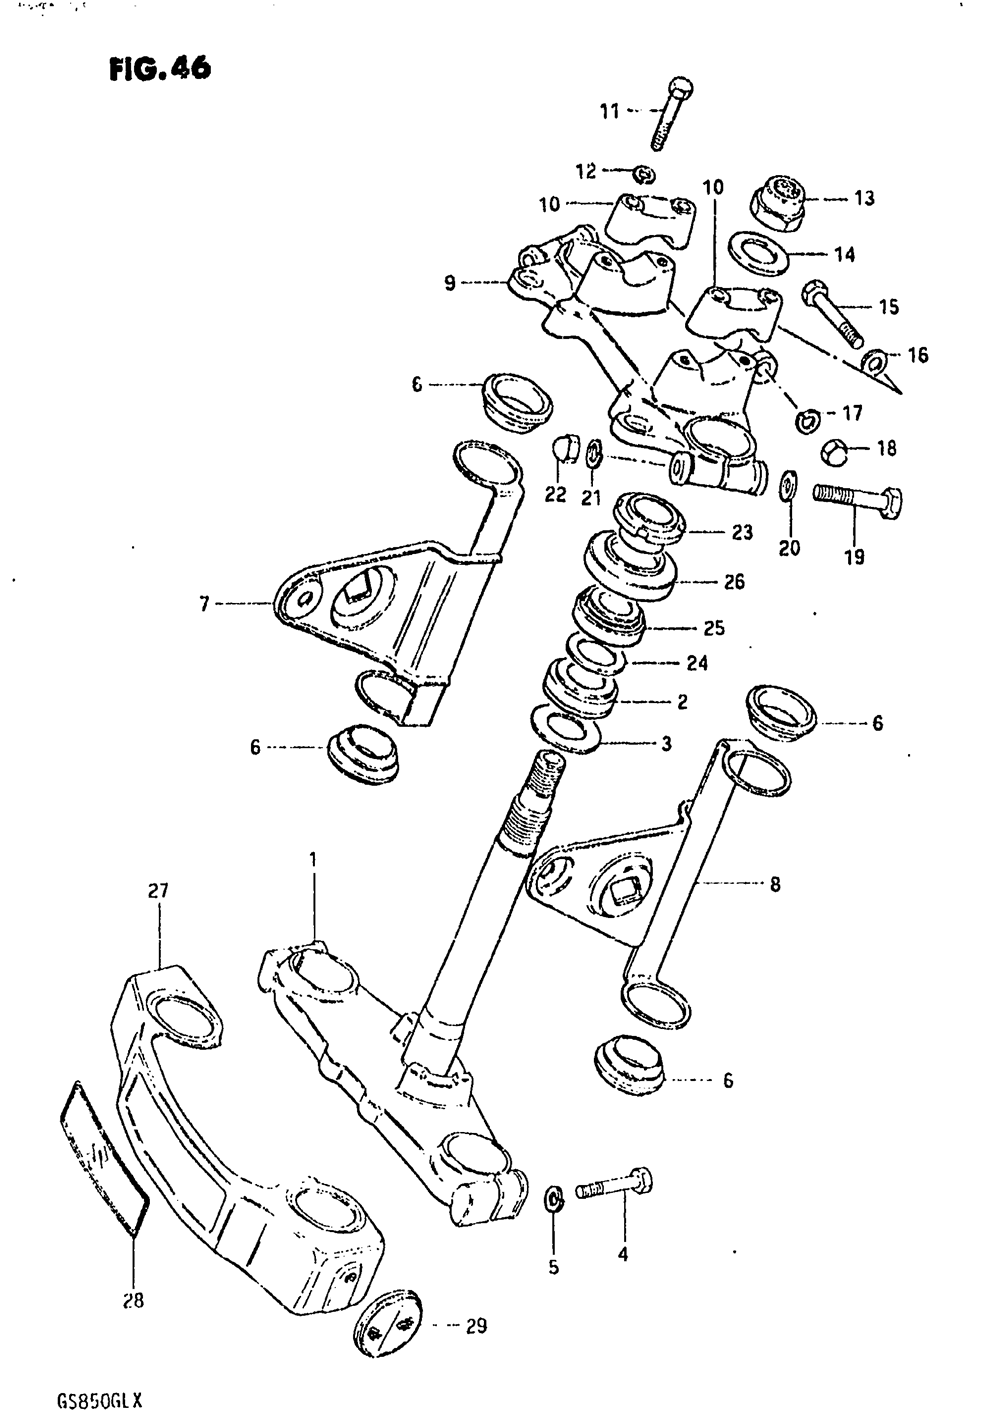 Steering stem (model x)